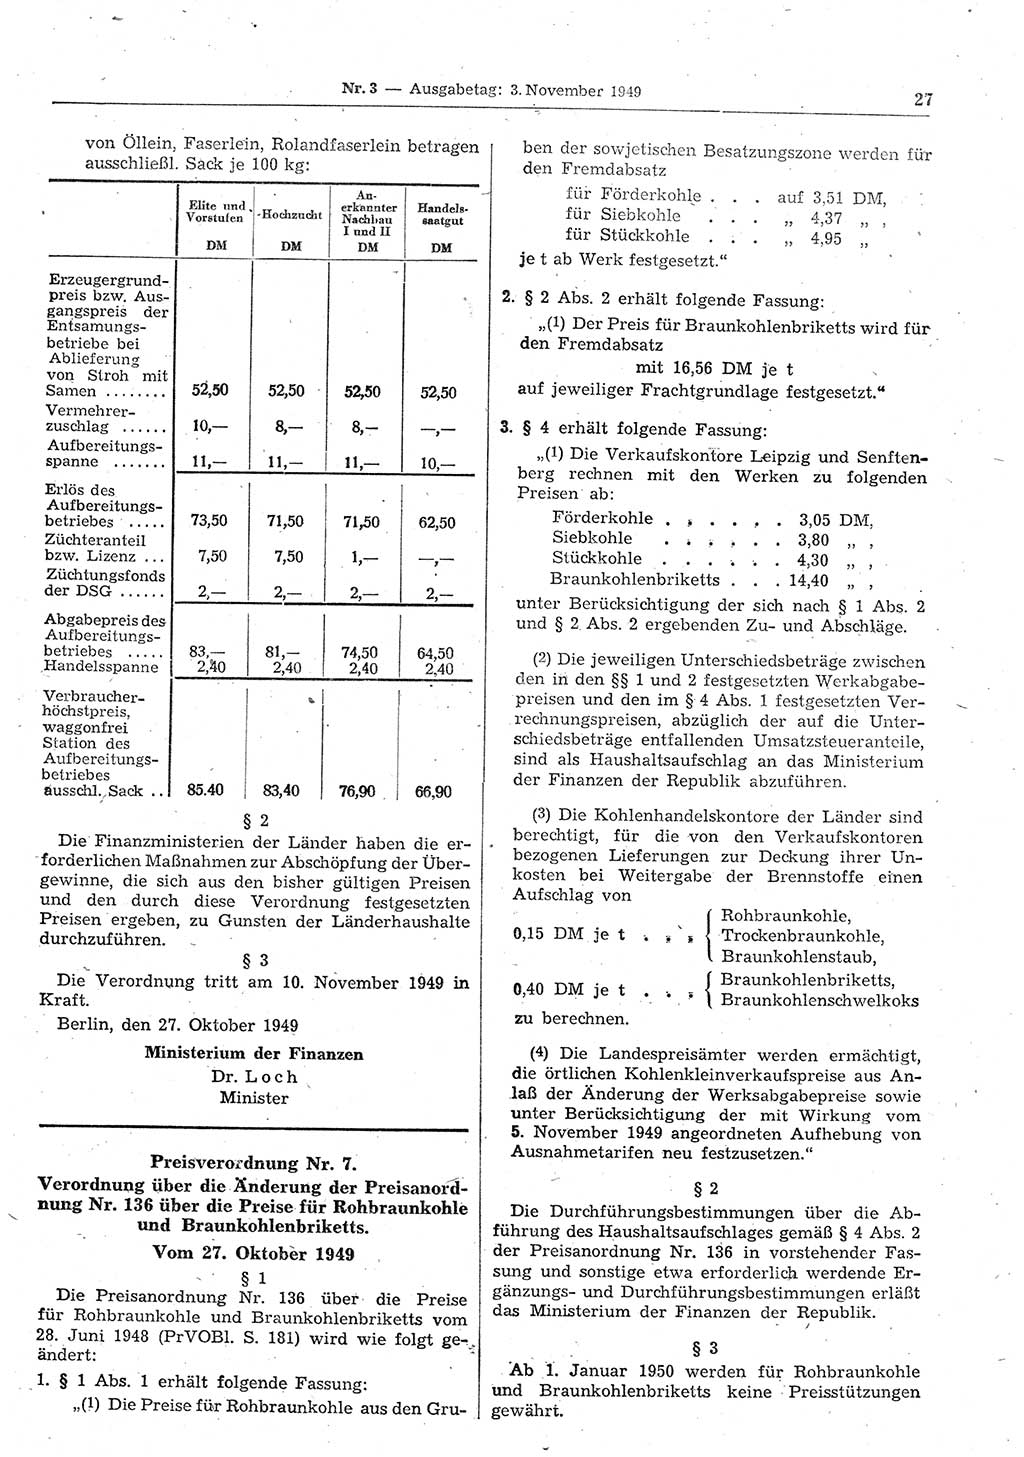 Gesetzblatt (GBl.) der Deutschen Demokratischen Republik (DDR) 1949, Seite 27 (GBl. DDR 1949, S. 27)